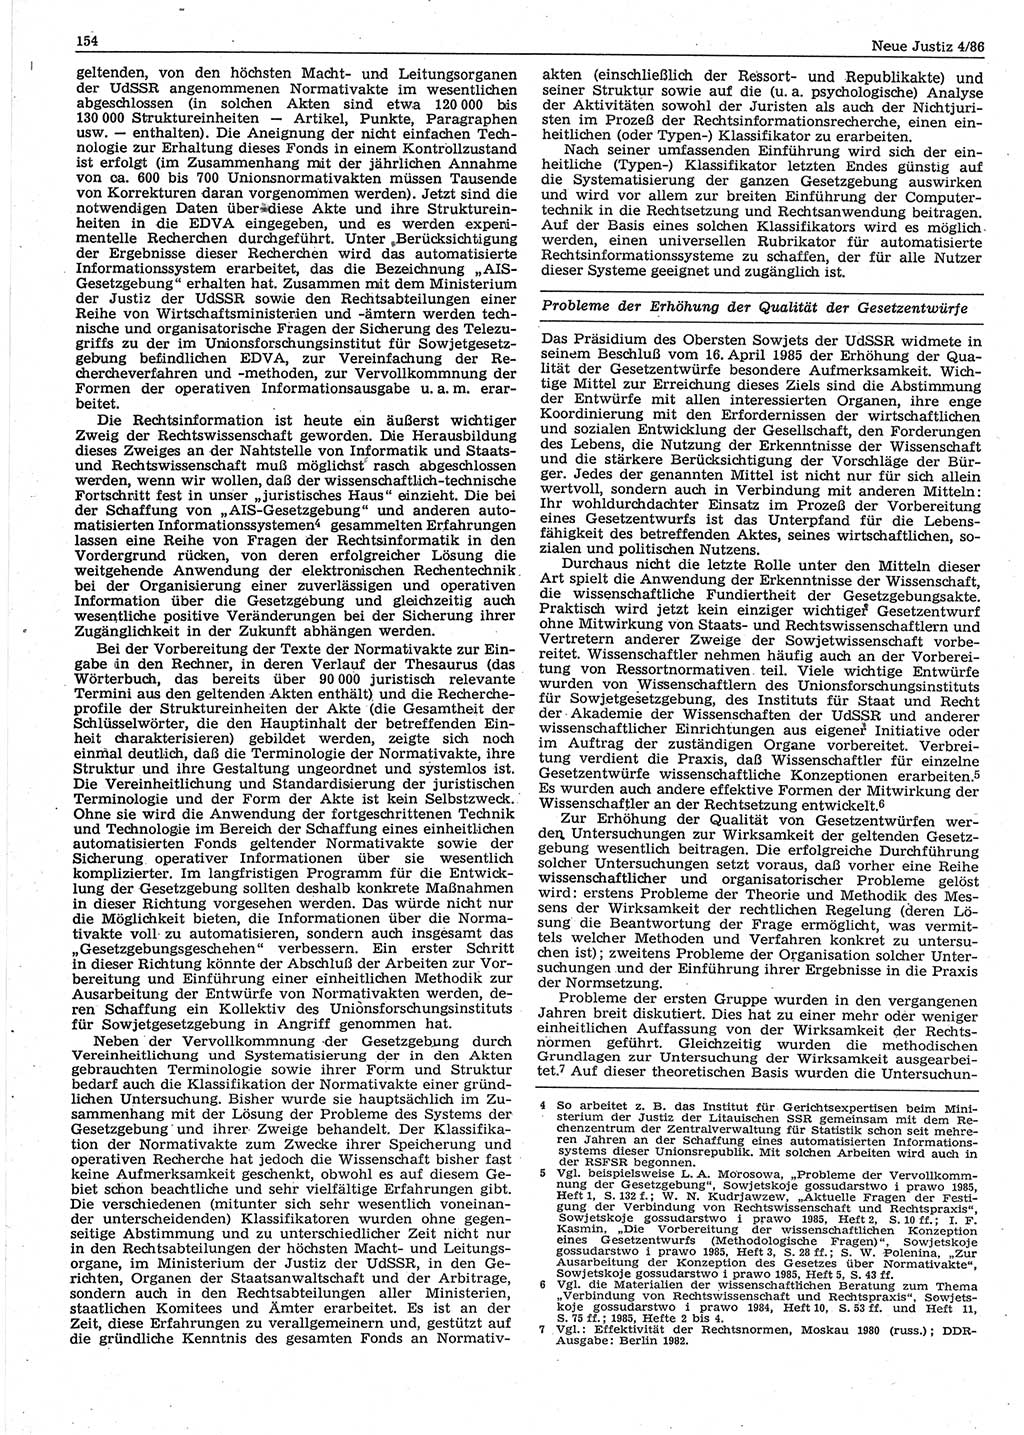 Neue Justiz (NJ), Zeitschrift für sozialistisches Recht und Gesetzlichkeit [Deutsche Demokratische Republik (DDR)], 40. Jahrgang 1986, Seite 154 (NJ DDR 1986, S. 154)